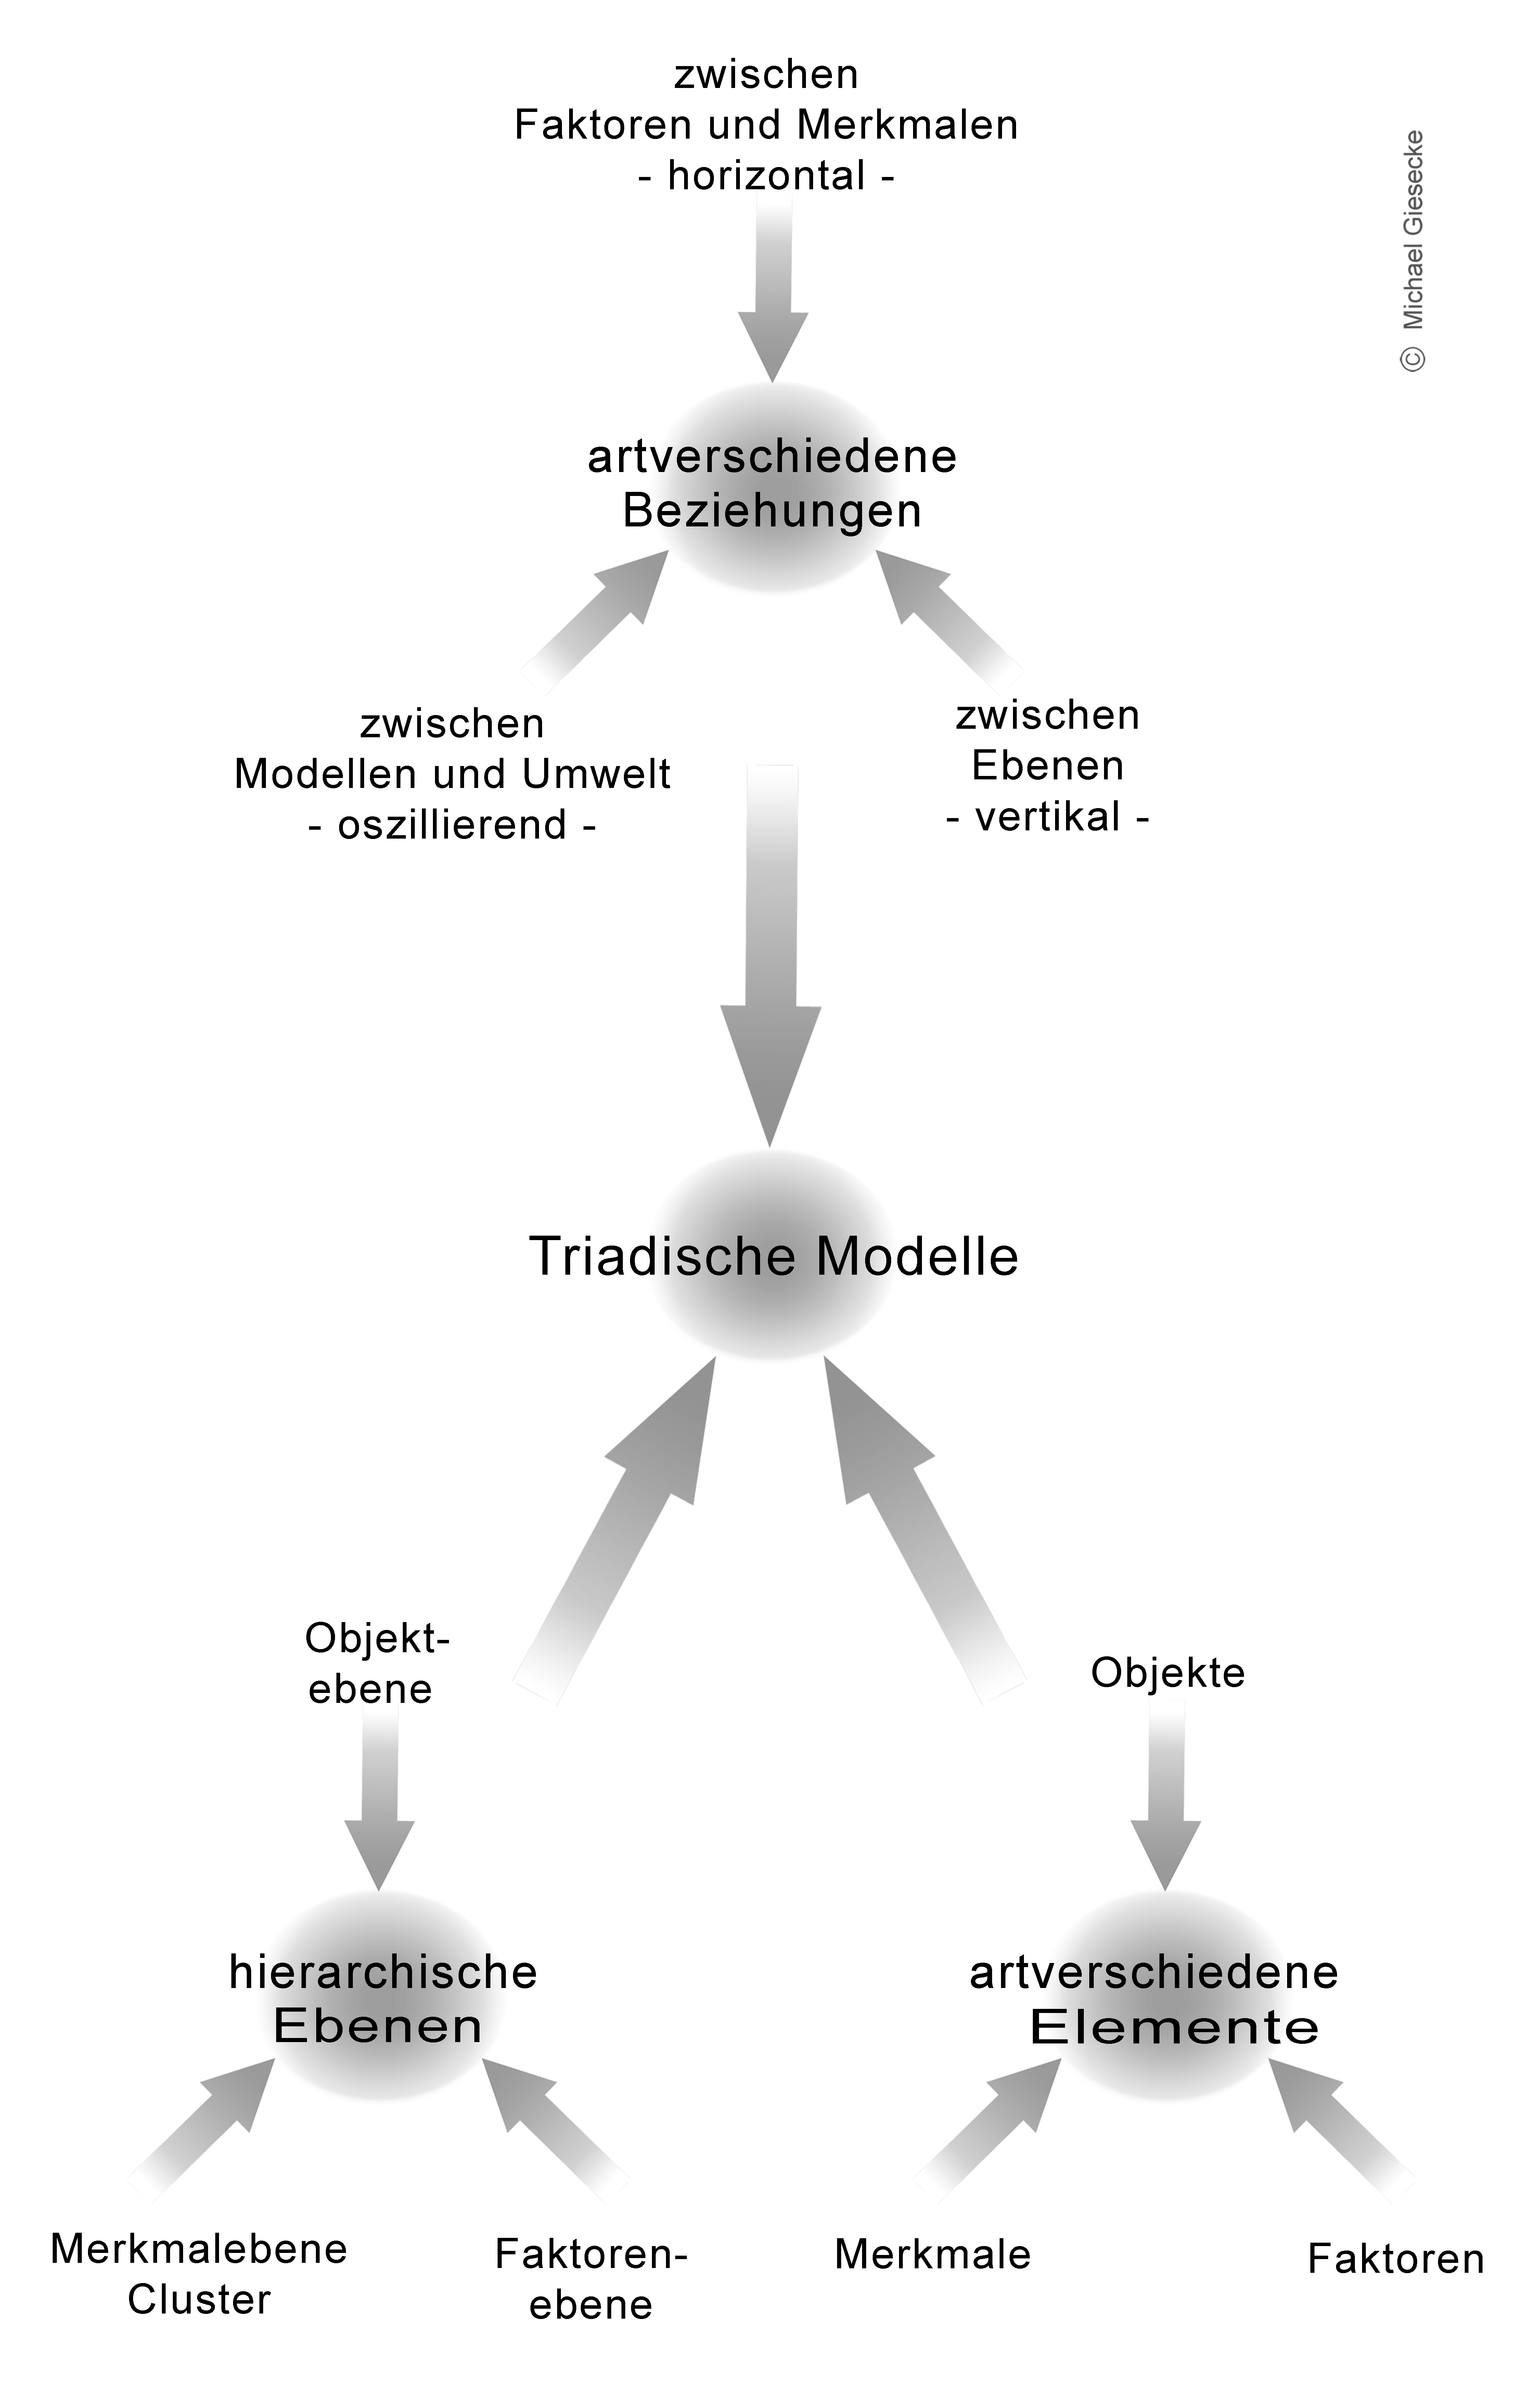 Architektur des Metamodells der Basistriade